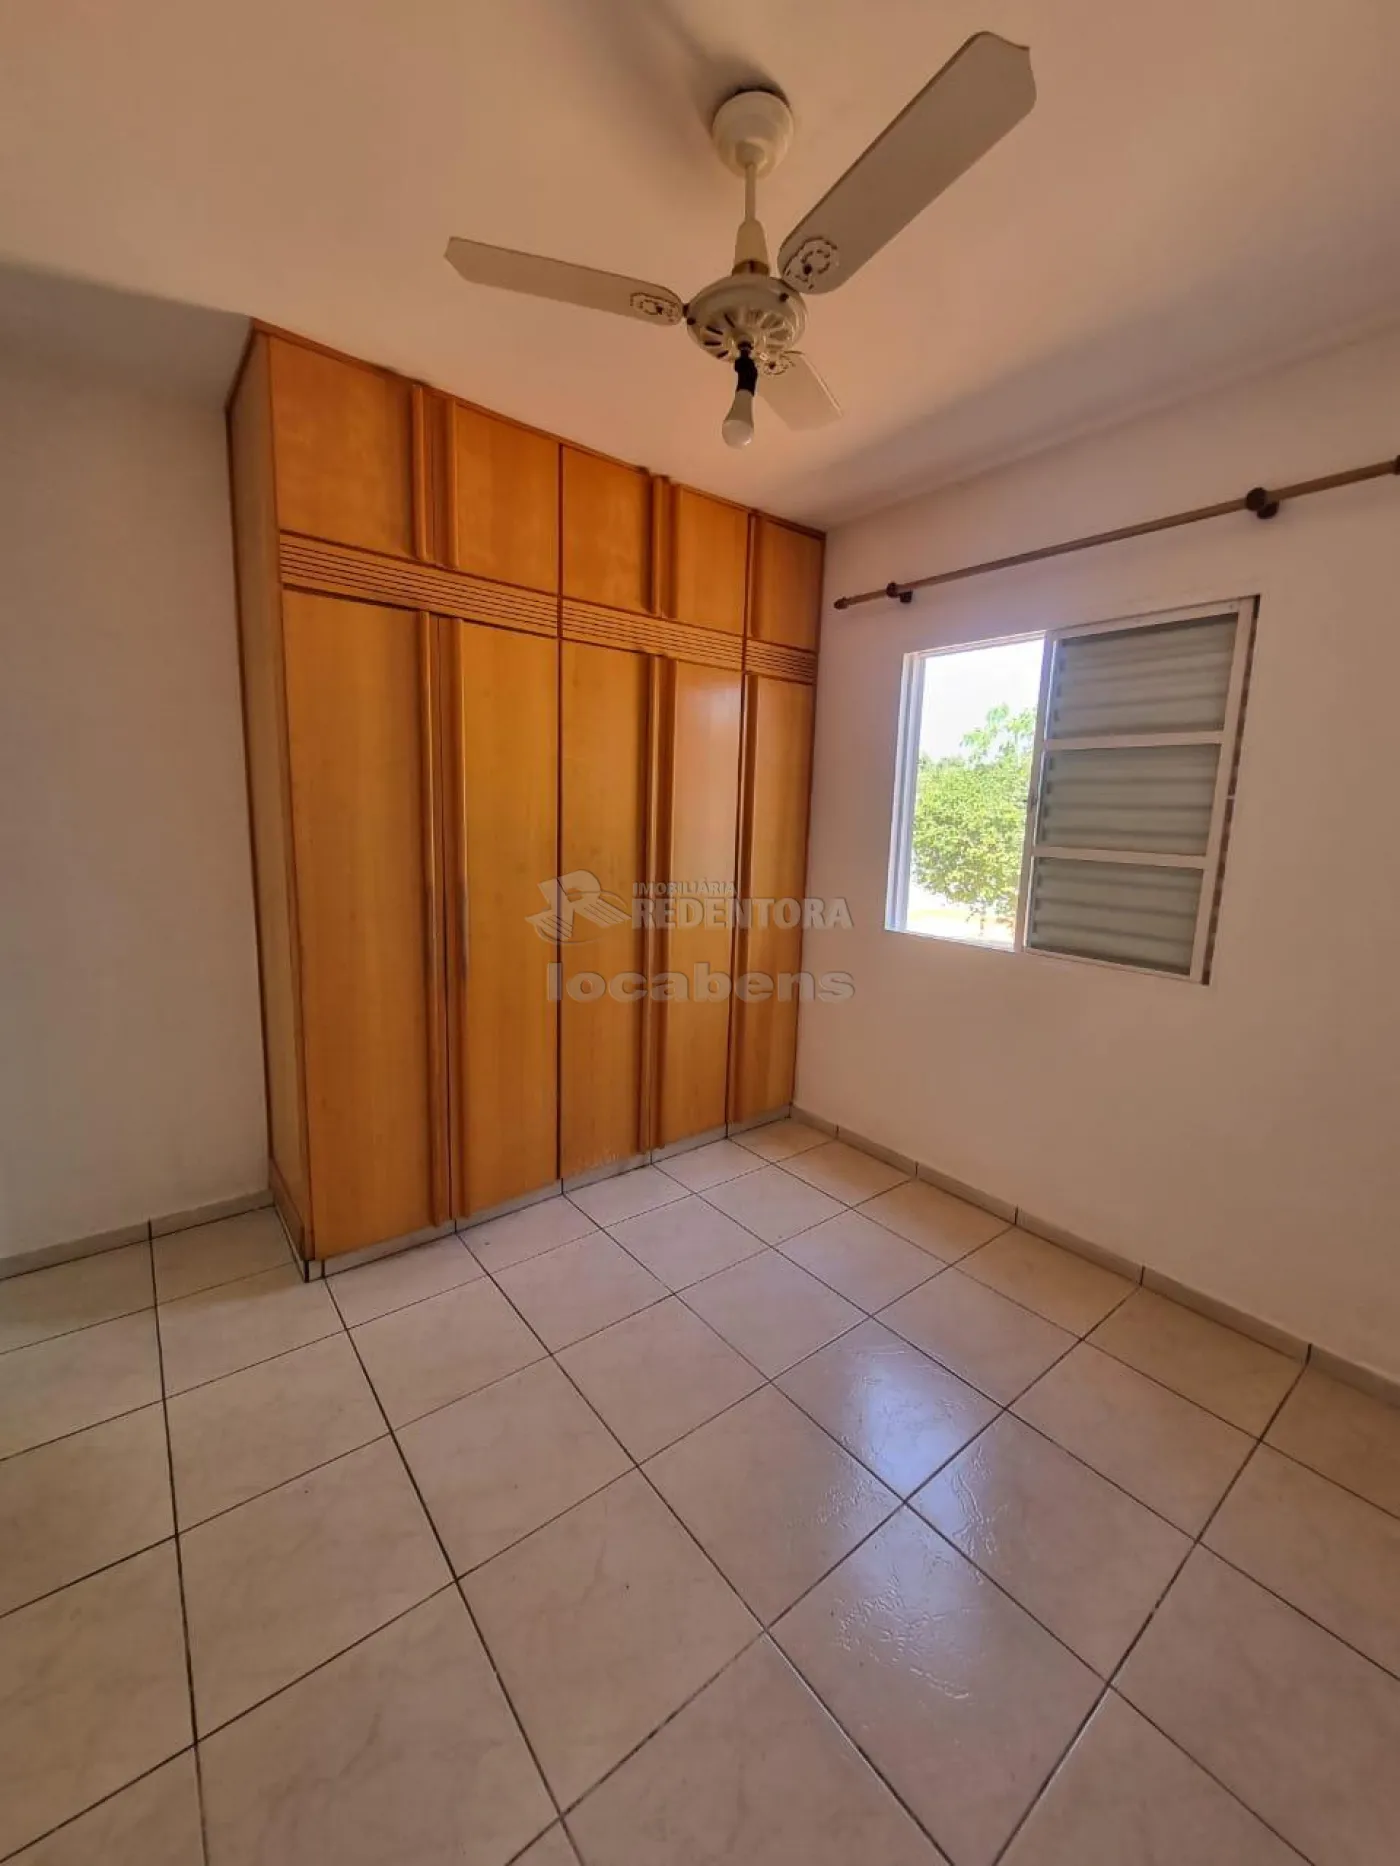 Alugar Casa / Condomínio em São José do Rio Preto apenas R$ 2.200,00 - Foto 5